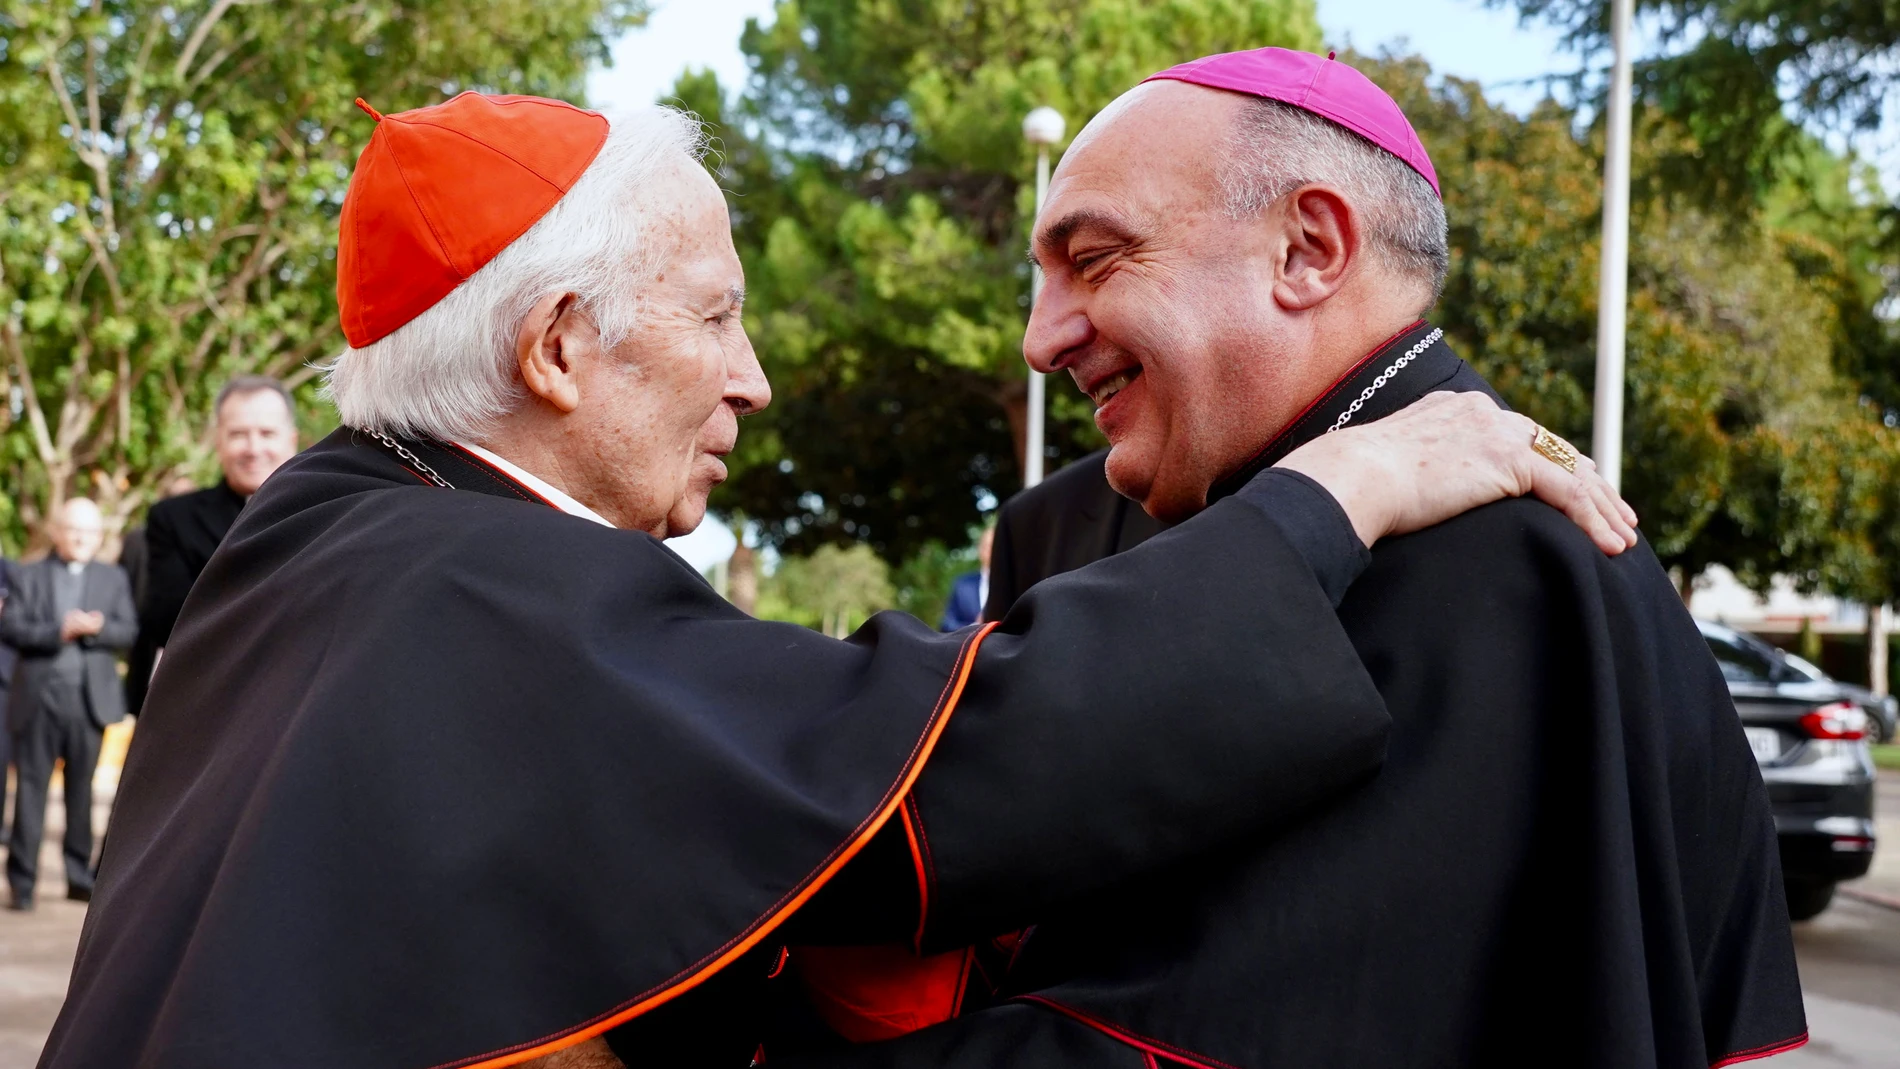 El cardenal arzobispo de Valencia, Antonio Cañizares, junto a su sucesor al frente de la diócesis de Valencia, ,monseñor Enrique Benavent.ALBERTO SAIZ09/12/2022